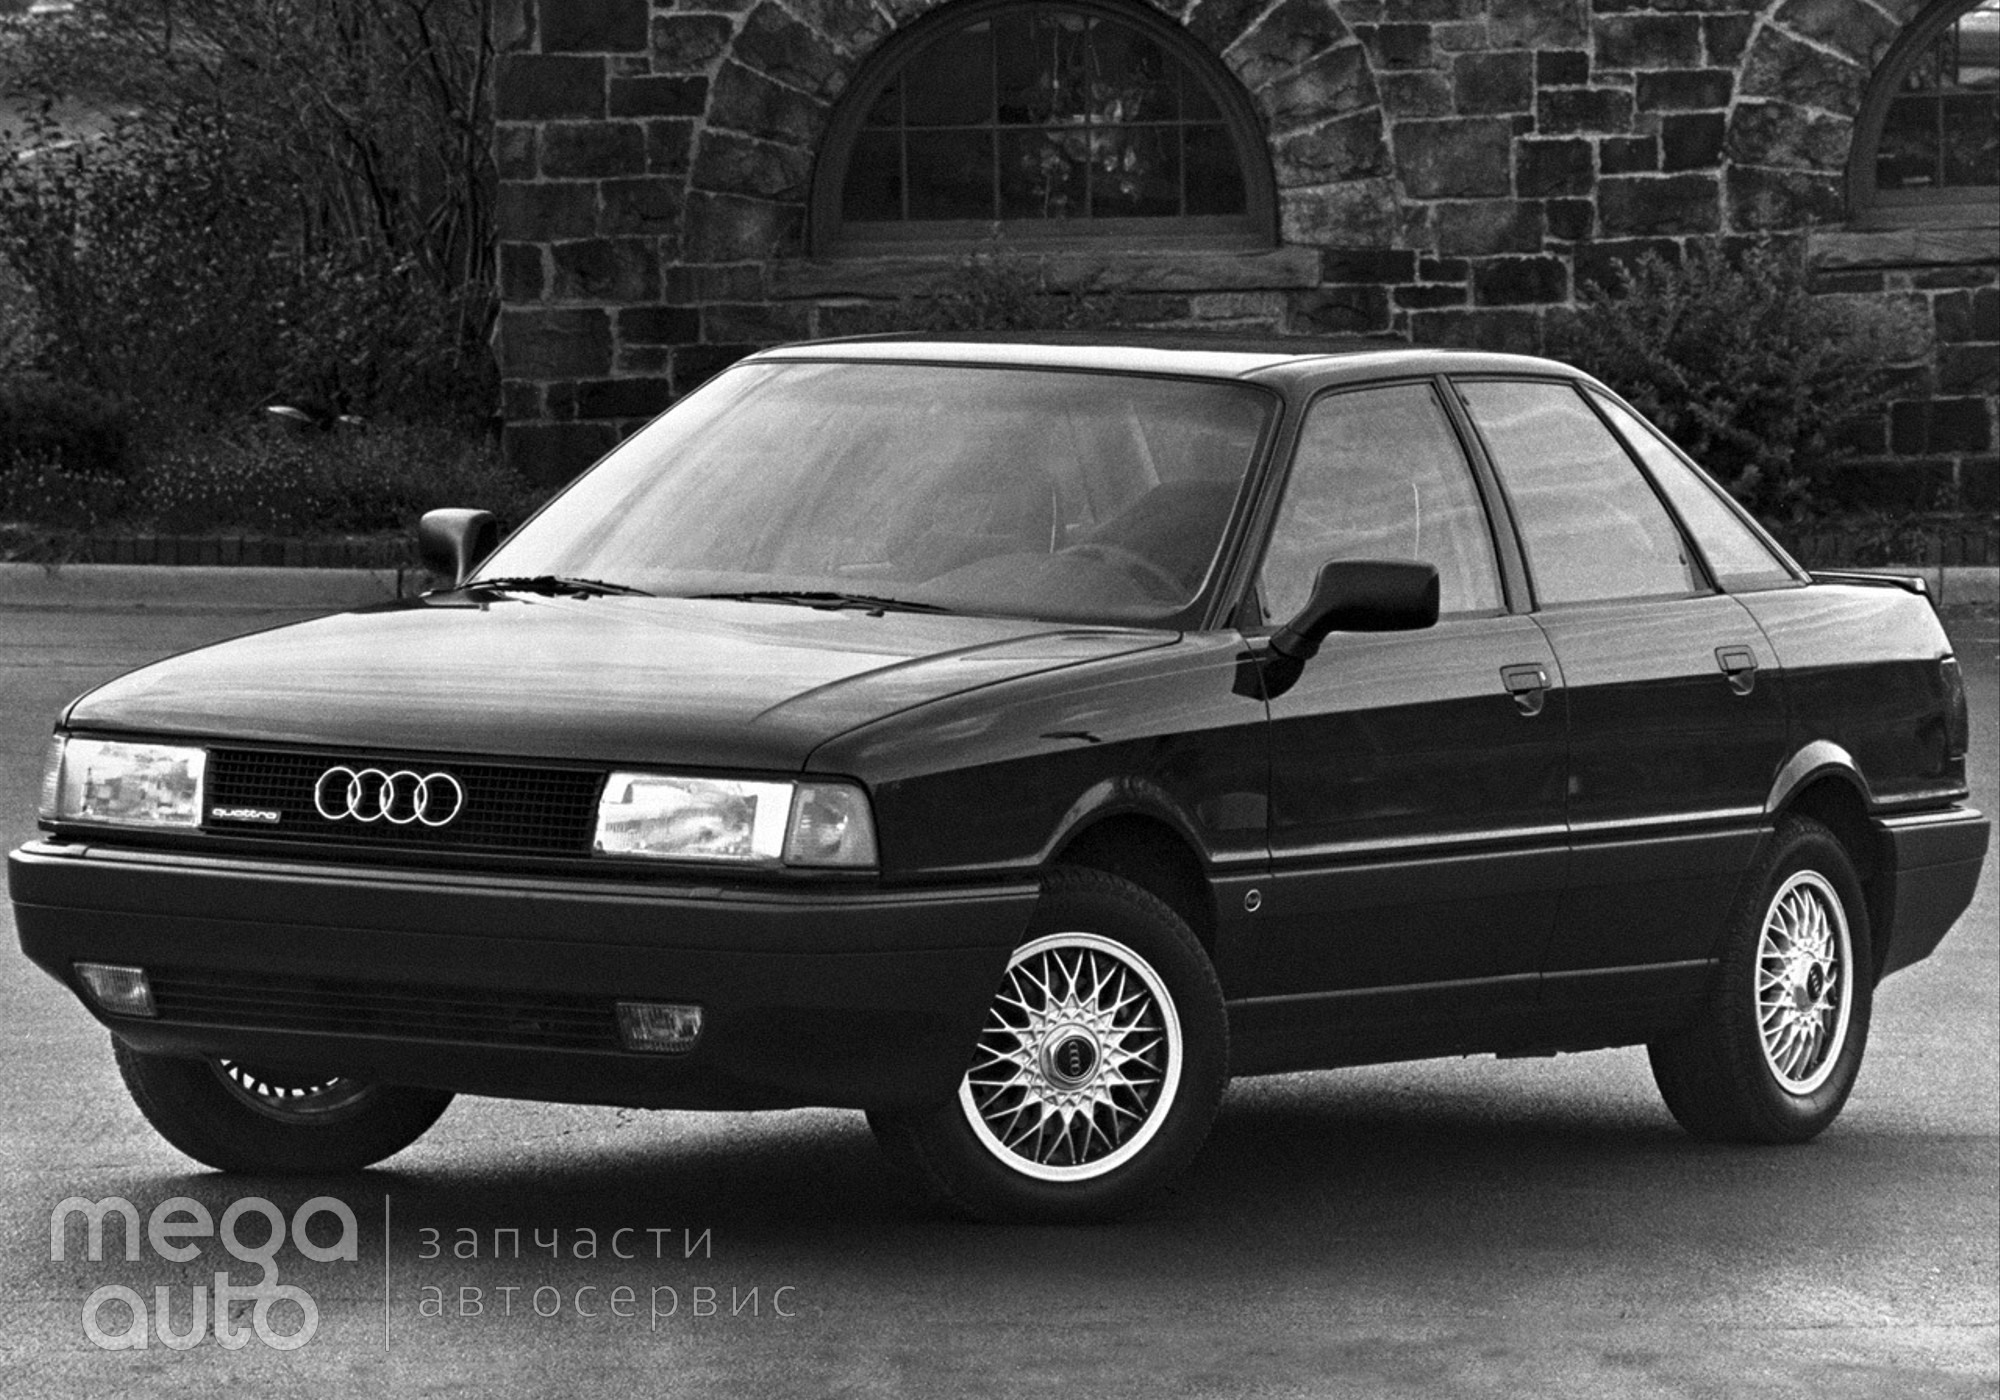 Audi 80 B3 1988 г. в разборе